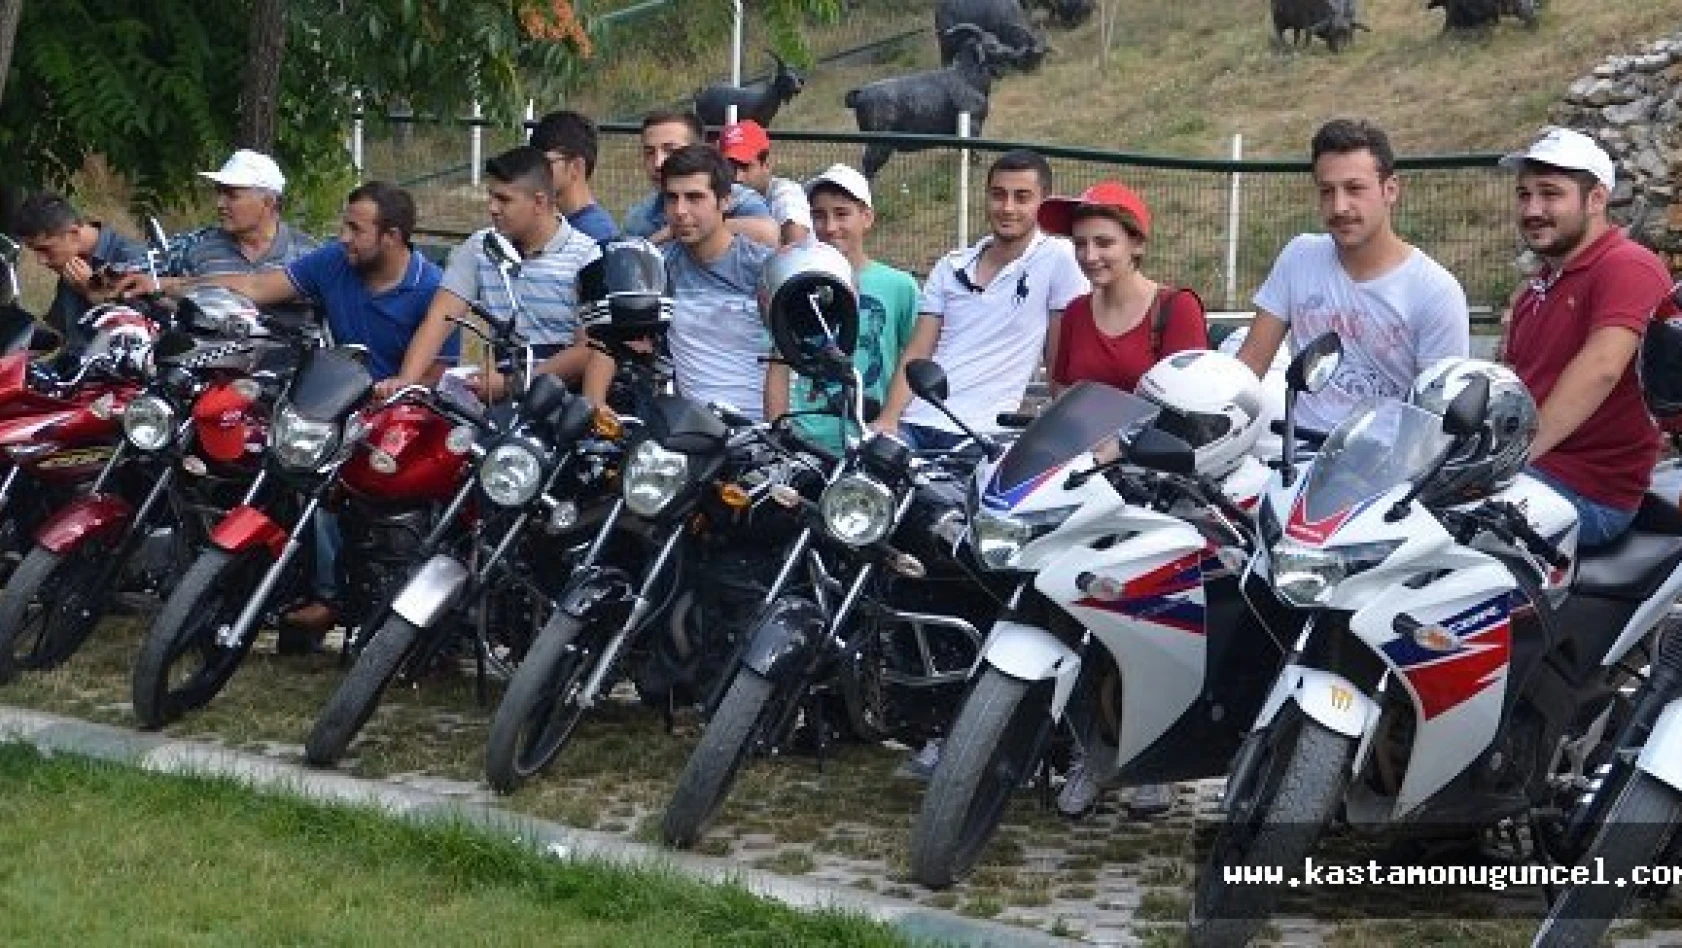 Tosya 1. Motosiklet Festivali